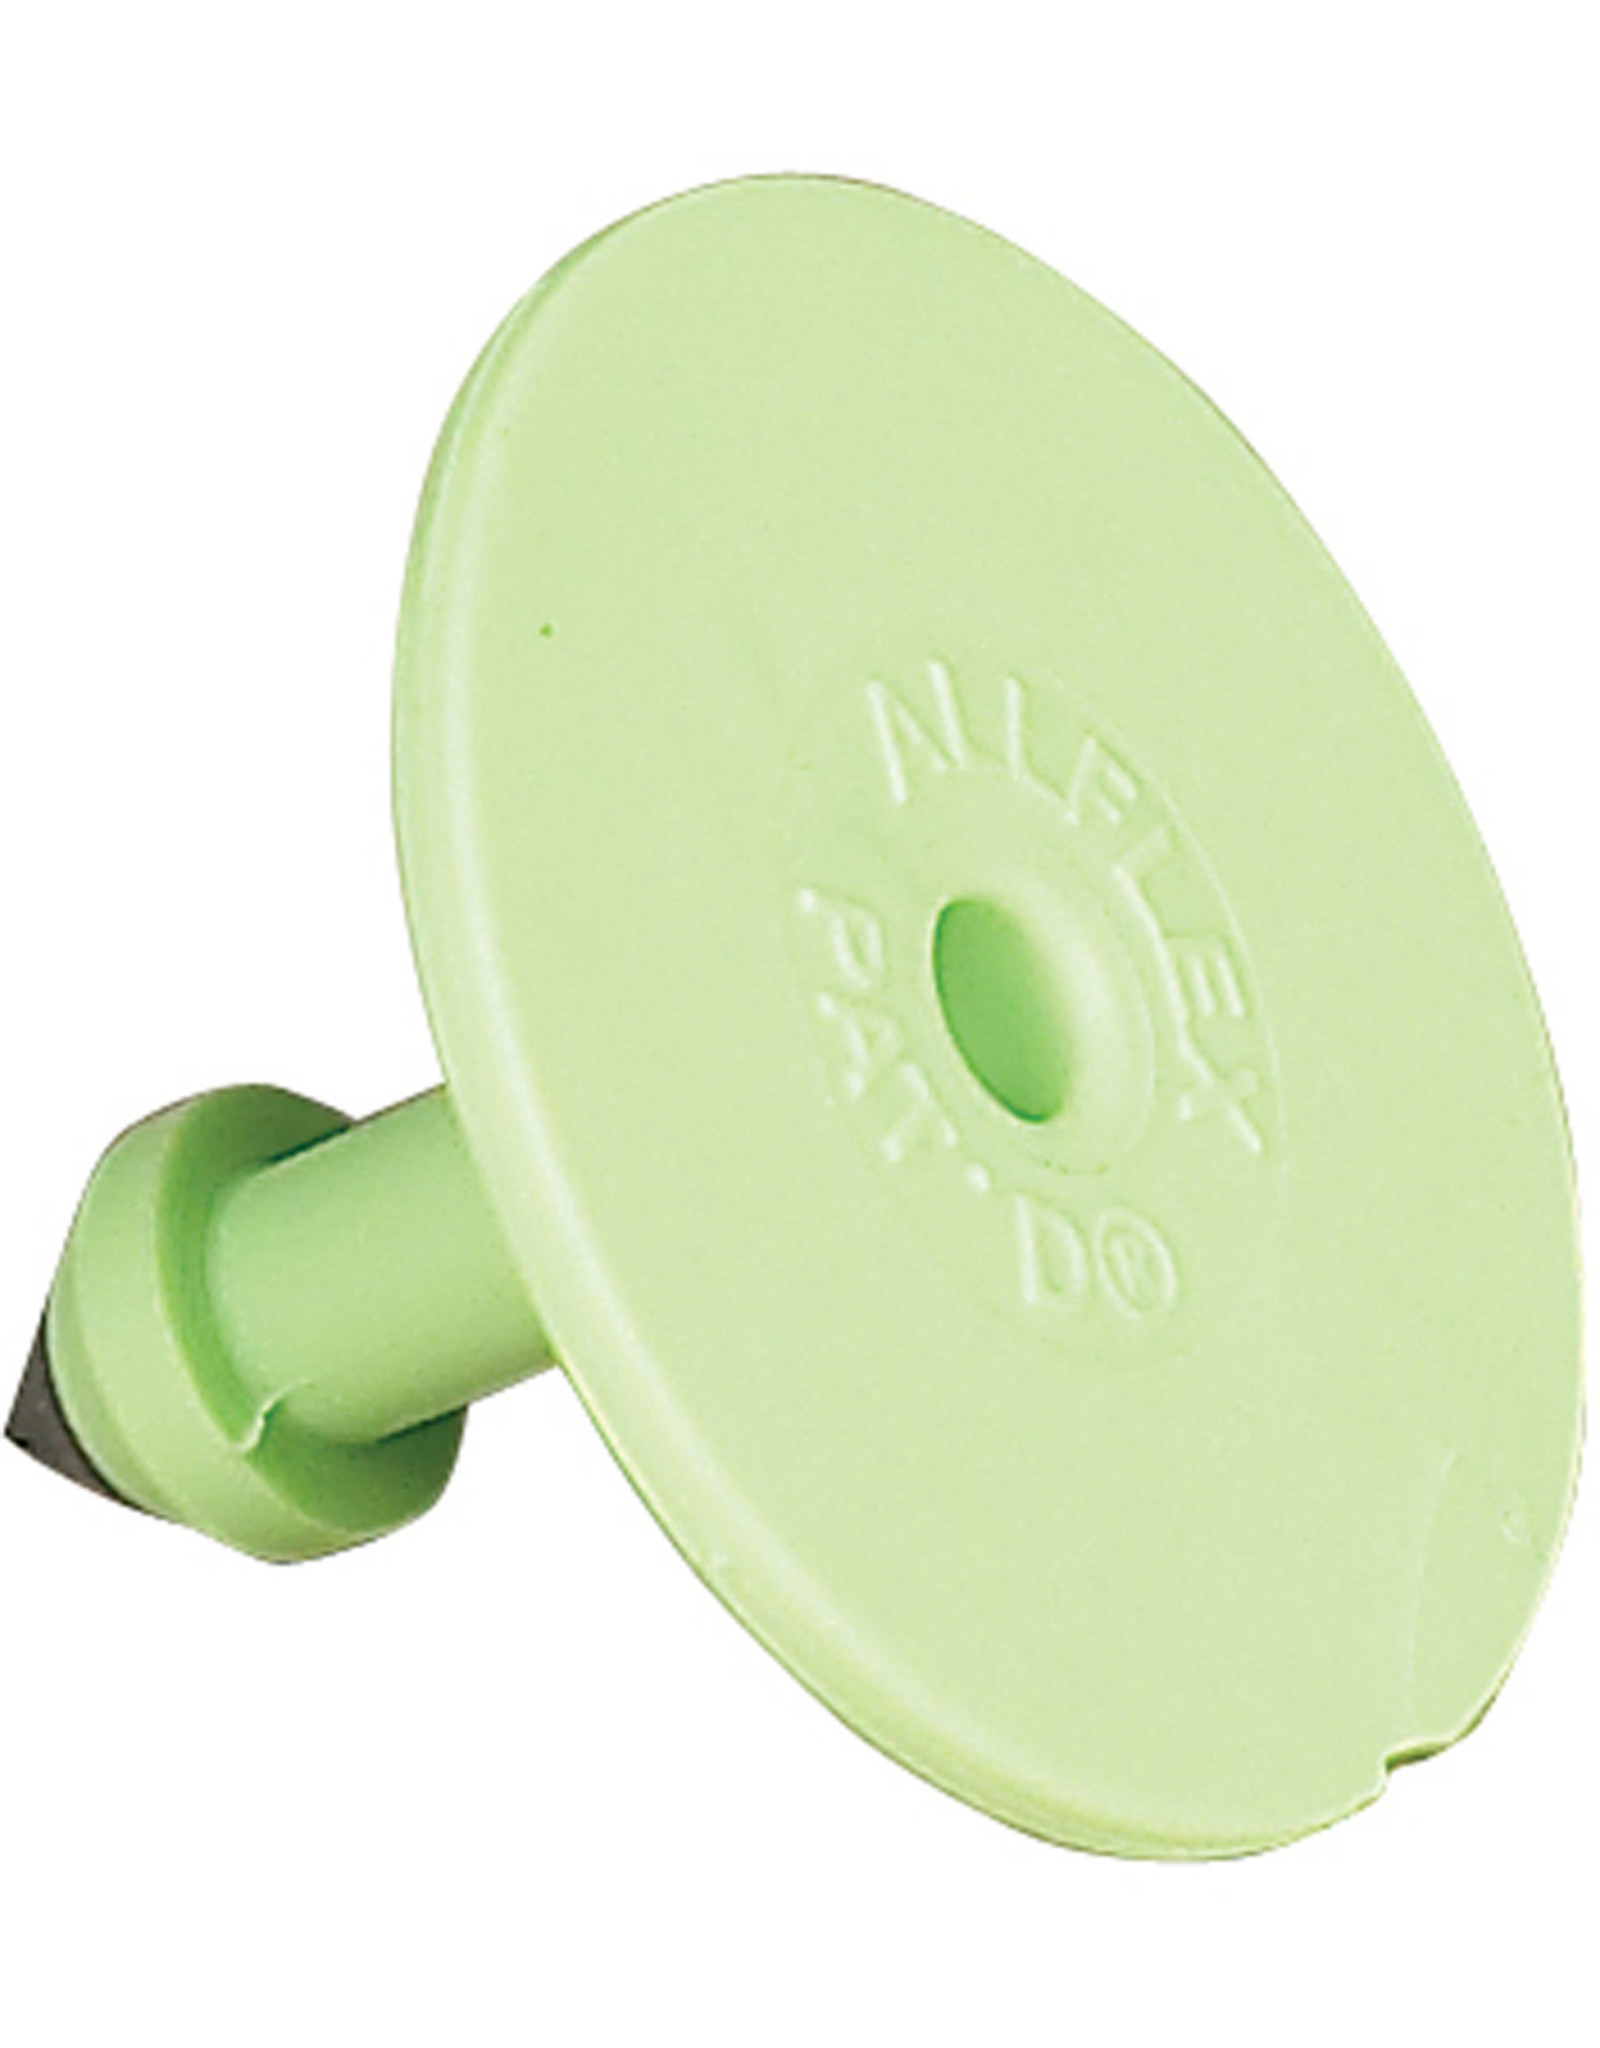 Allflex TAG* Allflex BUTTONS Sml Male 25s - Green GSMGR00